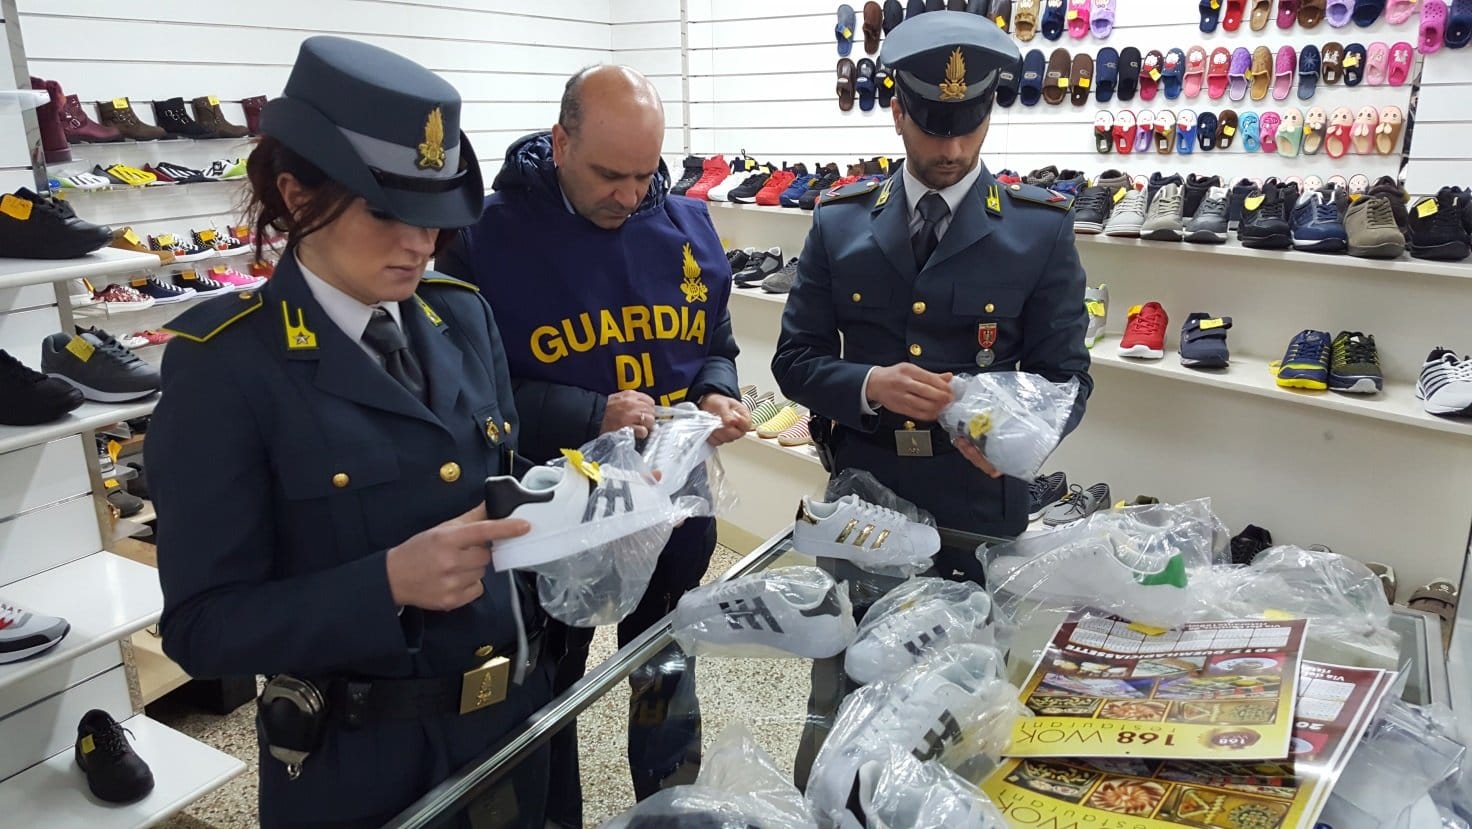 شرطة إيطاليا تضع يدها على صيد ثمين وتتمكن من تفكيك “مافيا” الأحذية المسمومة بصقلية كان زعيمها وراء مقتل أزيد من 60 شخص -التفاصيل-